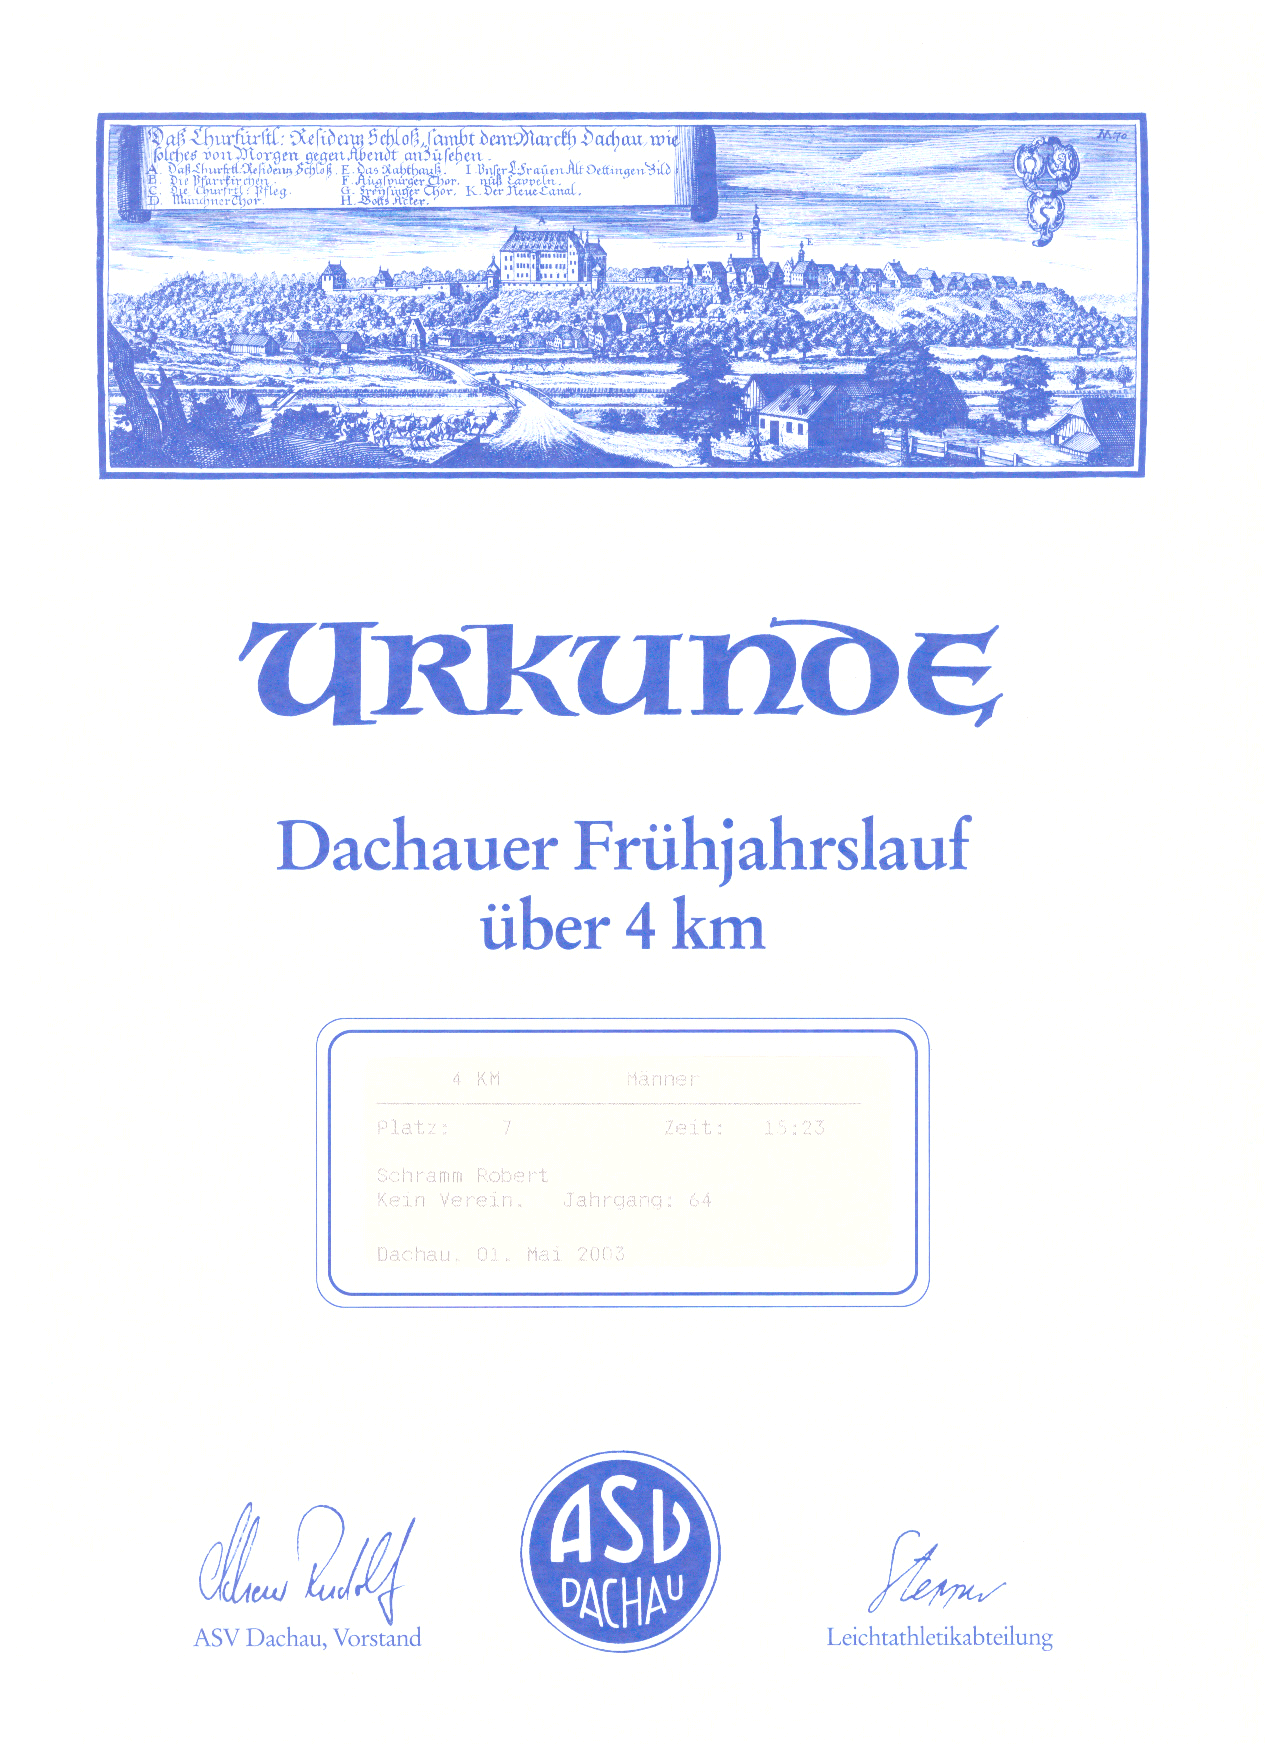 Urkunde-Dachau-Frh-2003